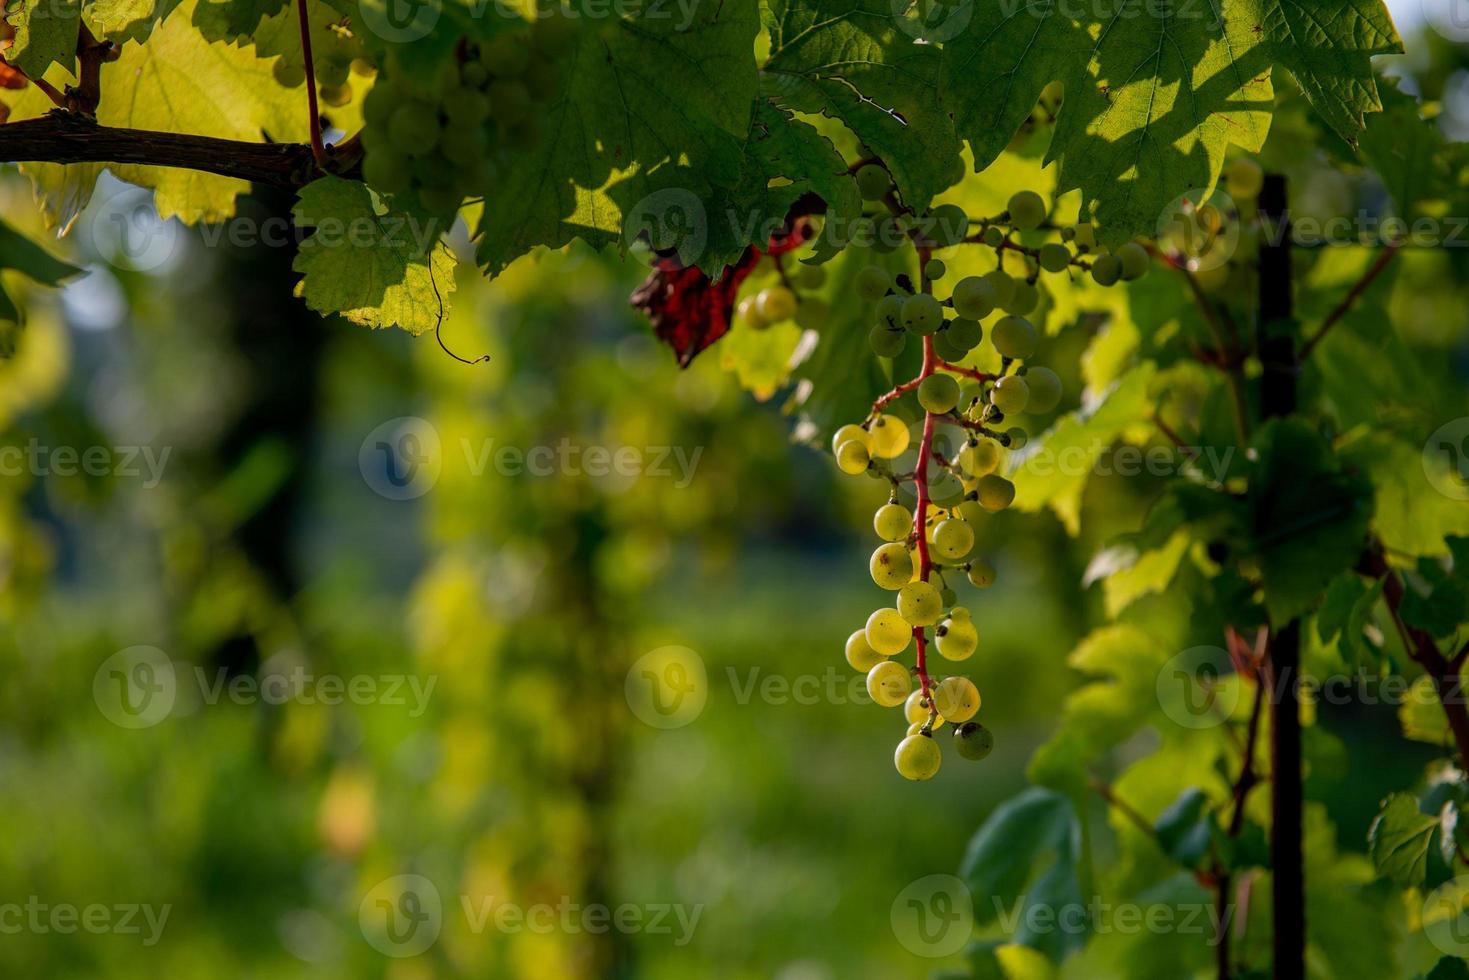 raisins prêts pour la récolte photo